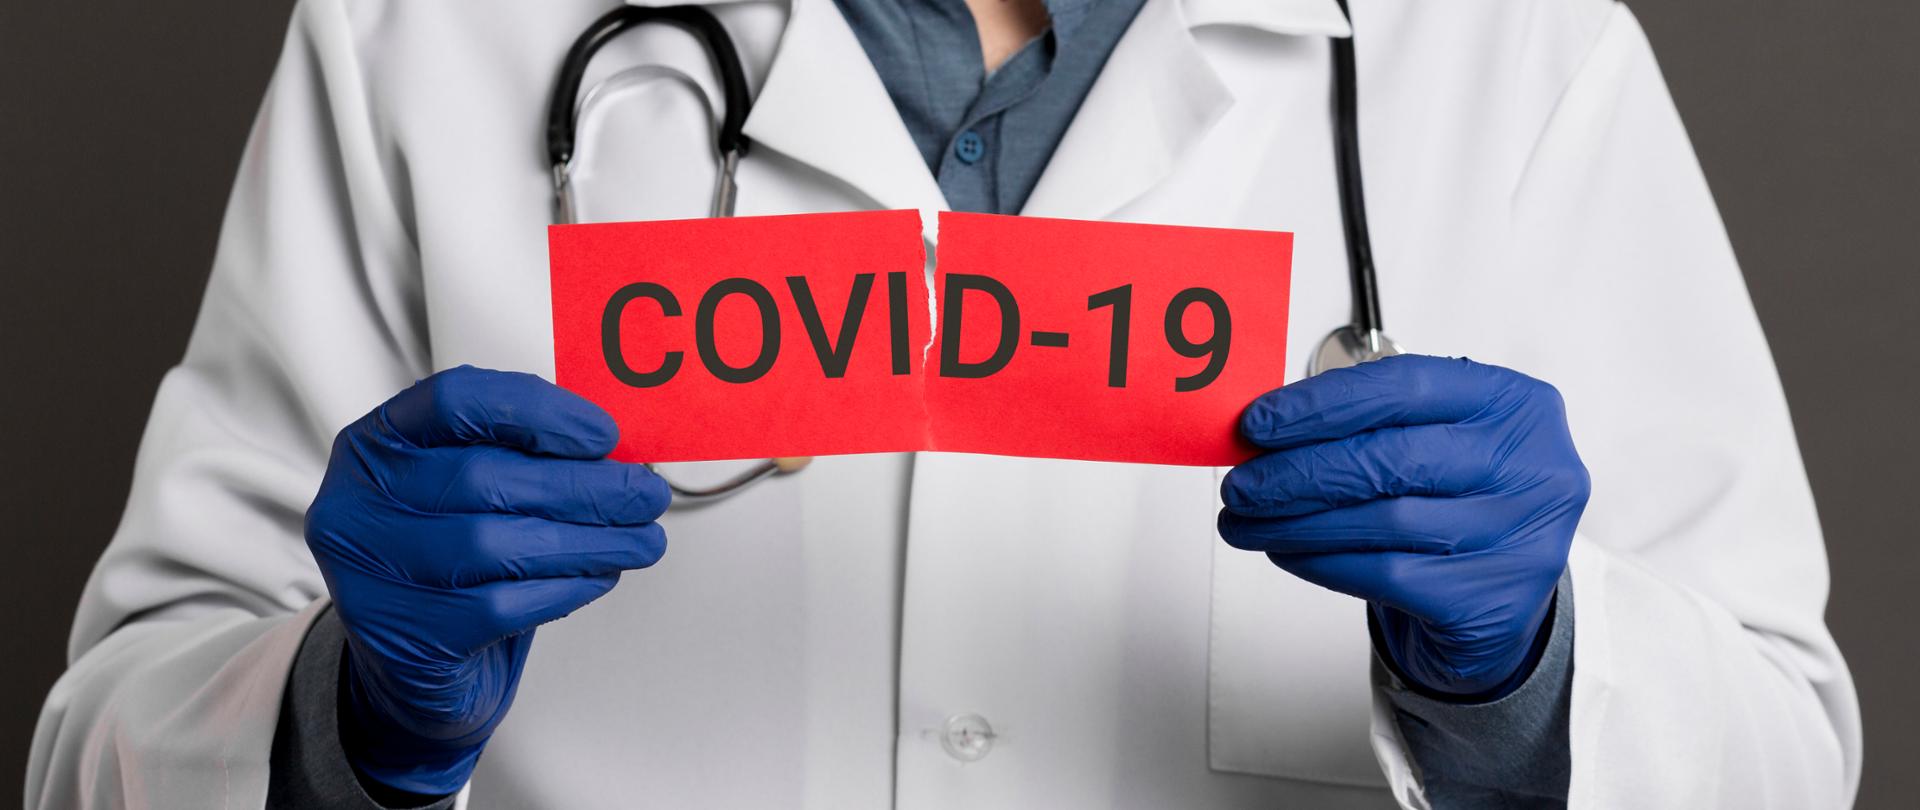 Doktor trzymający kartkę z napisem COVID-19